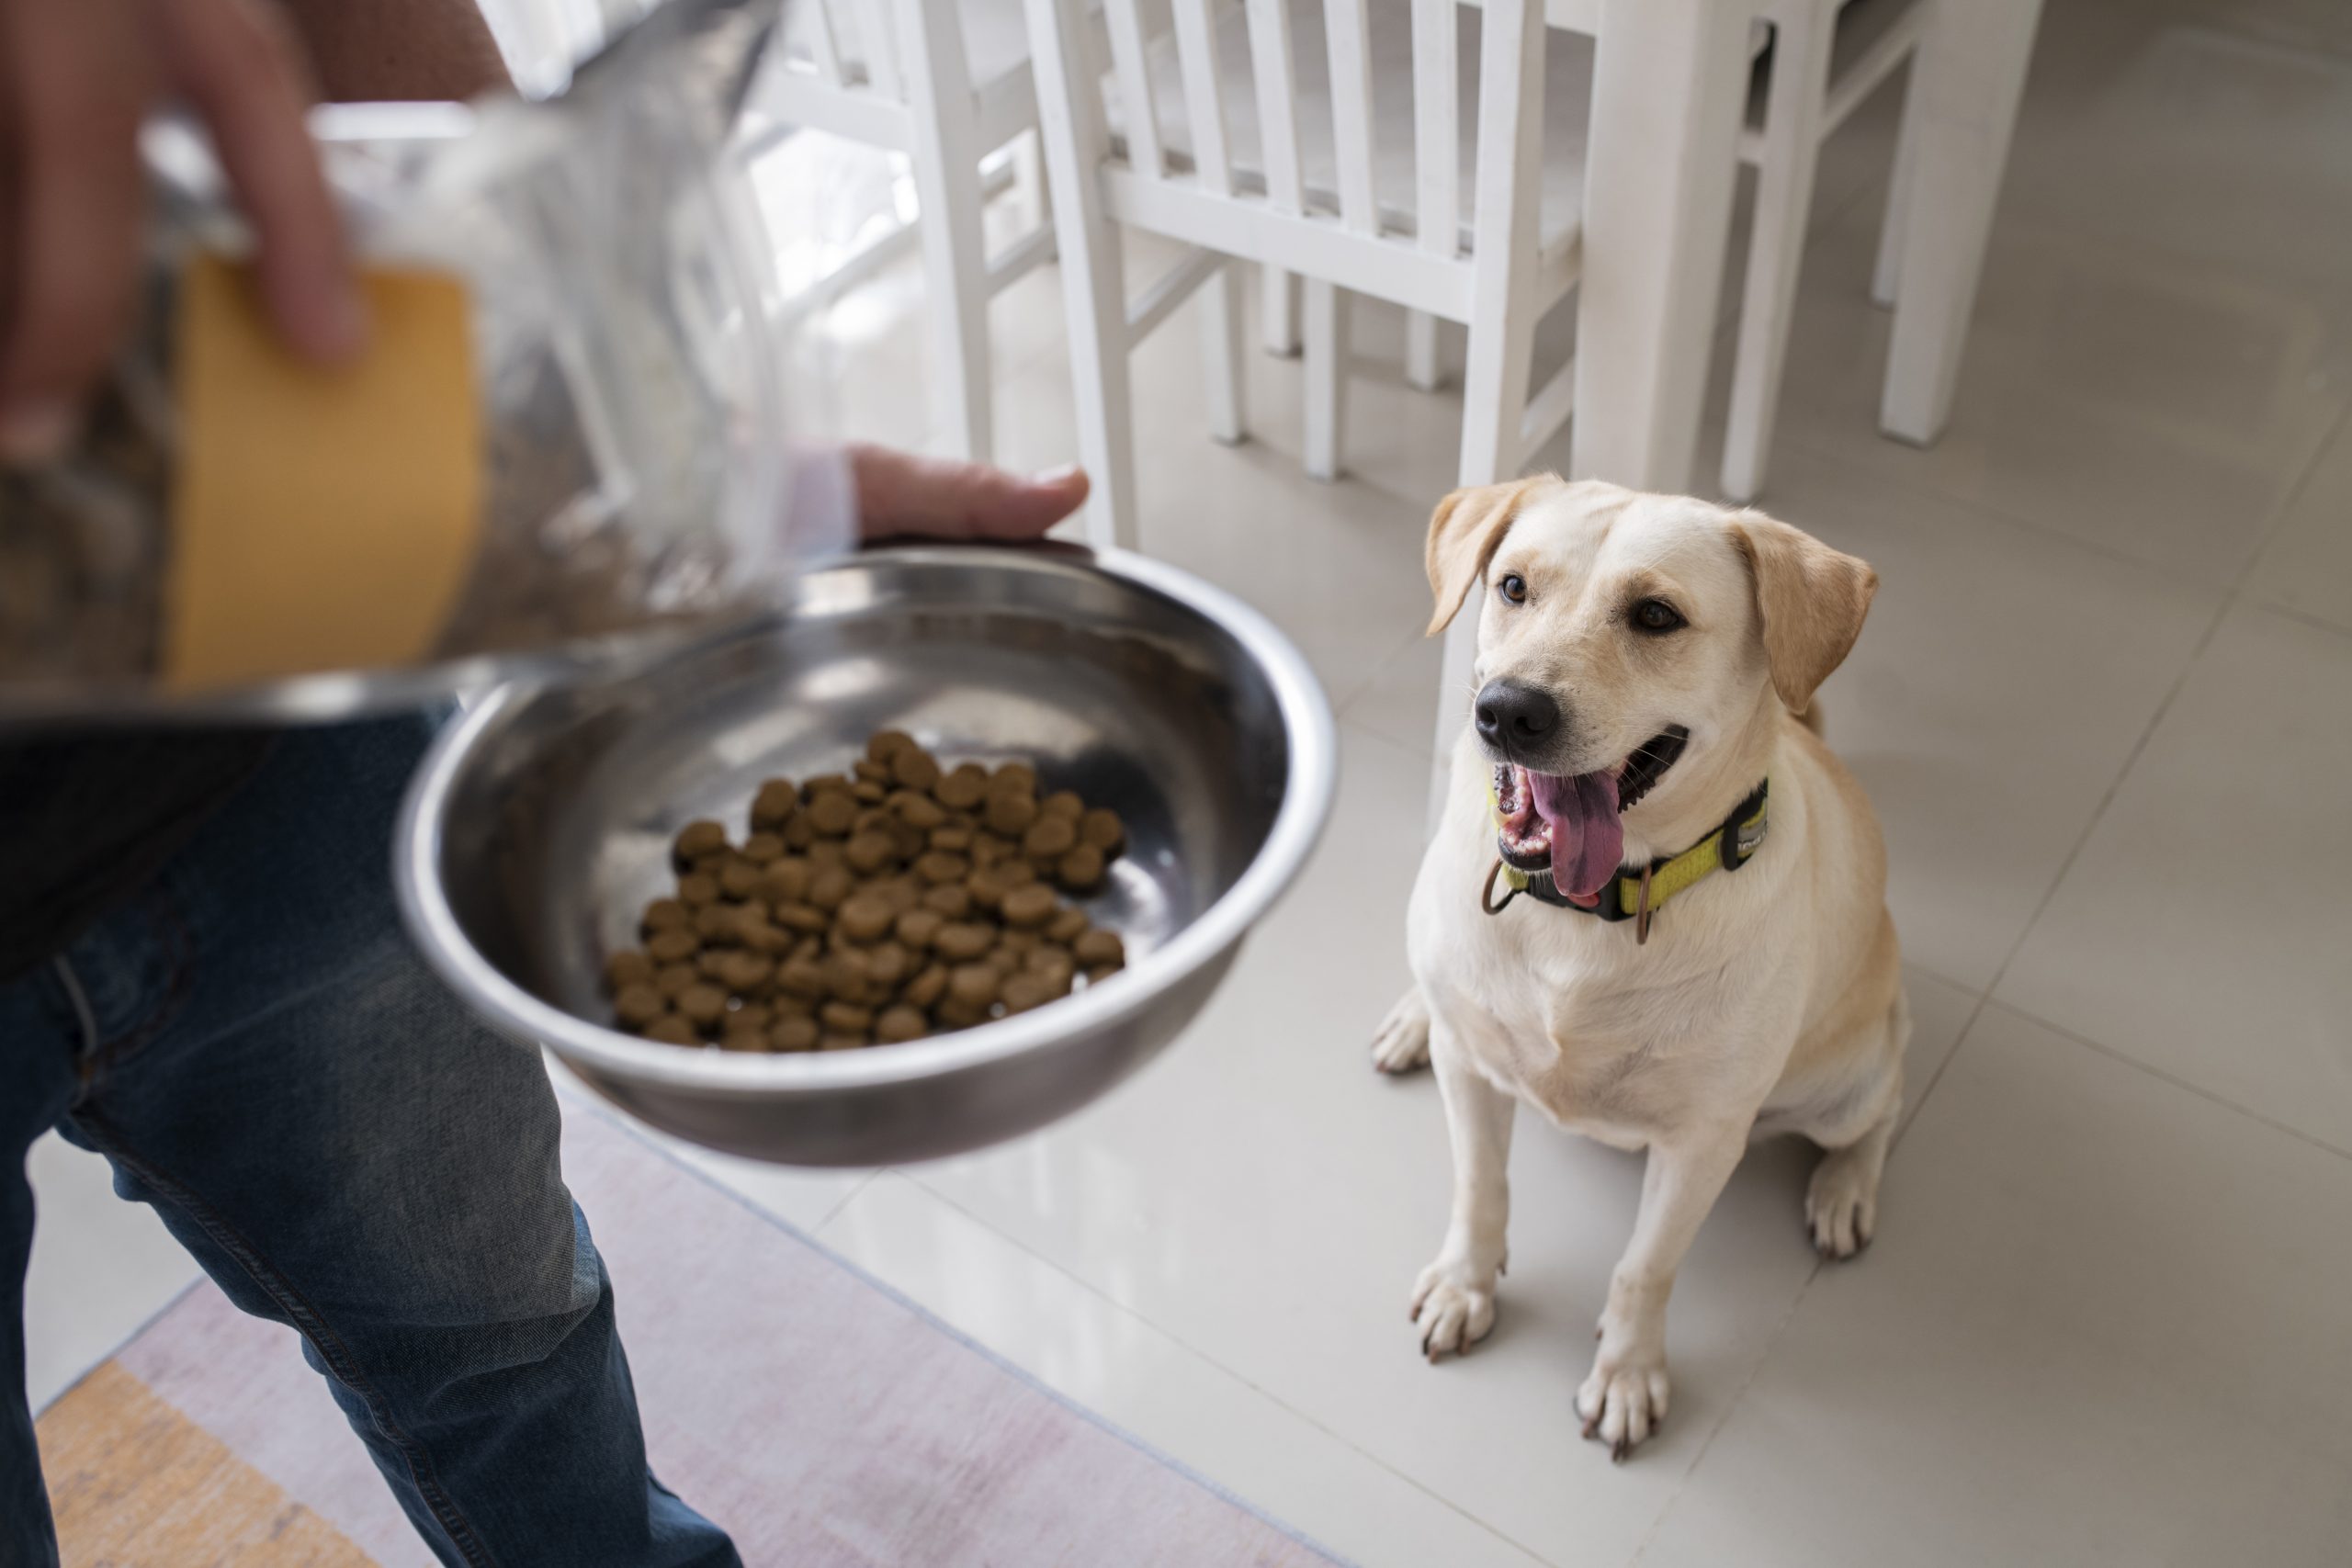  ارتباط سبک زندگی و تغذیه ما با تغذیه سگ ها | خرید تشویقی طبیعی برای سگ